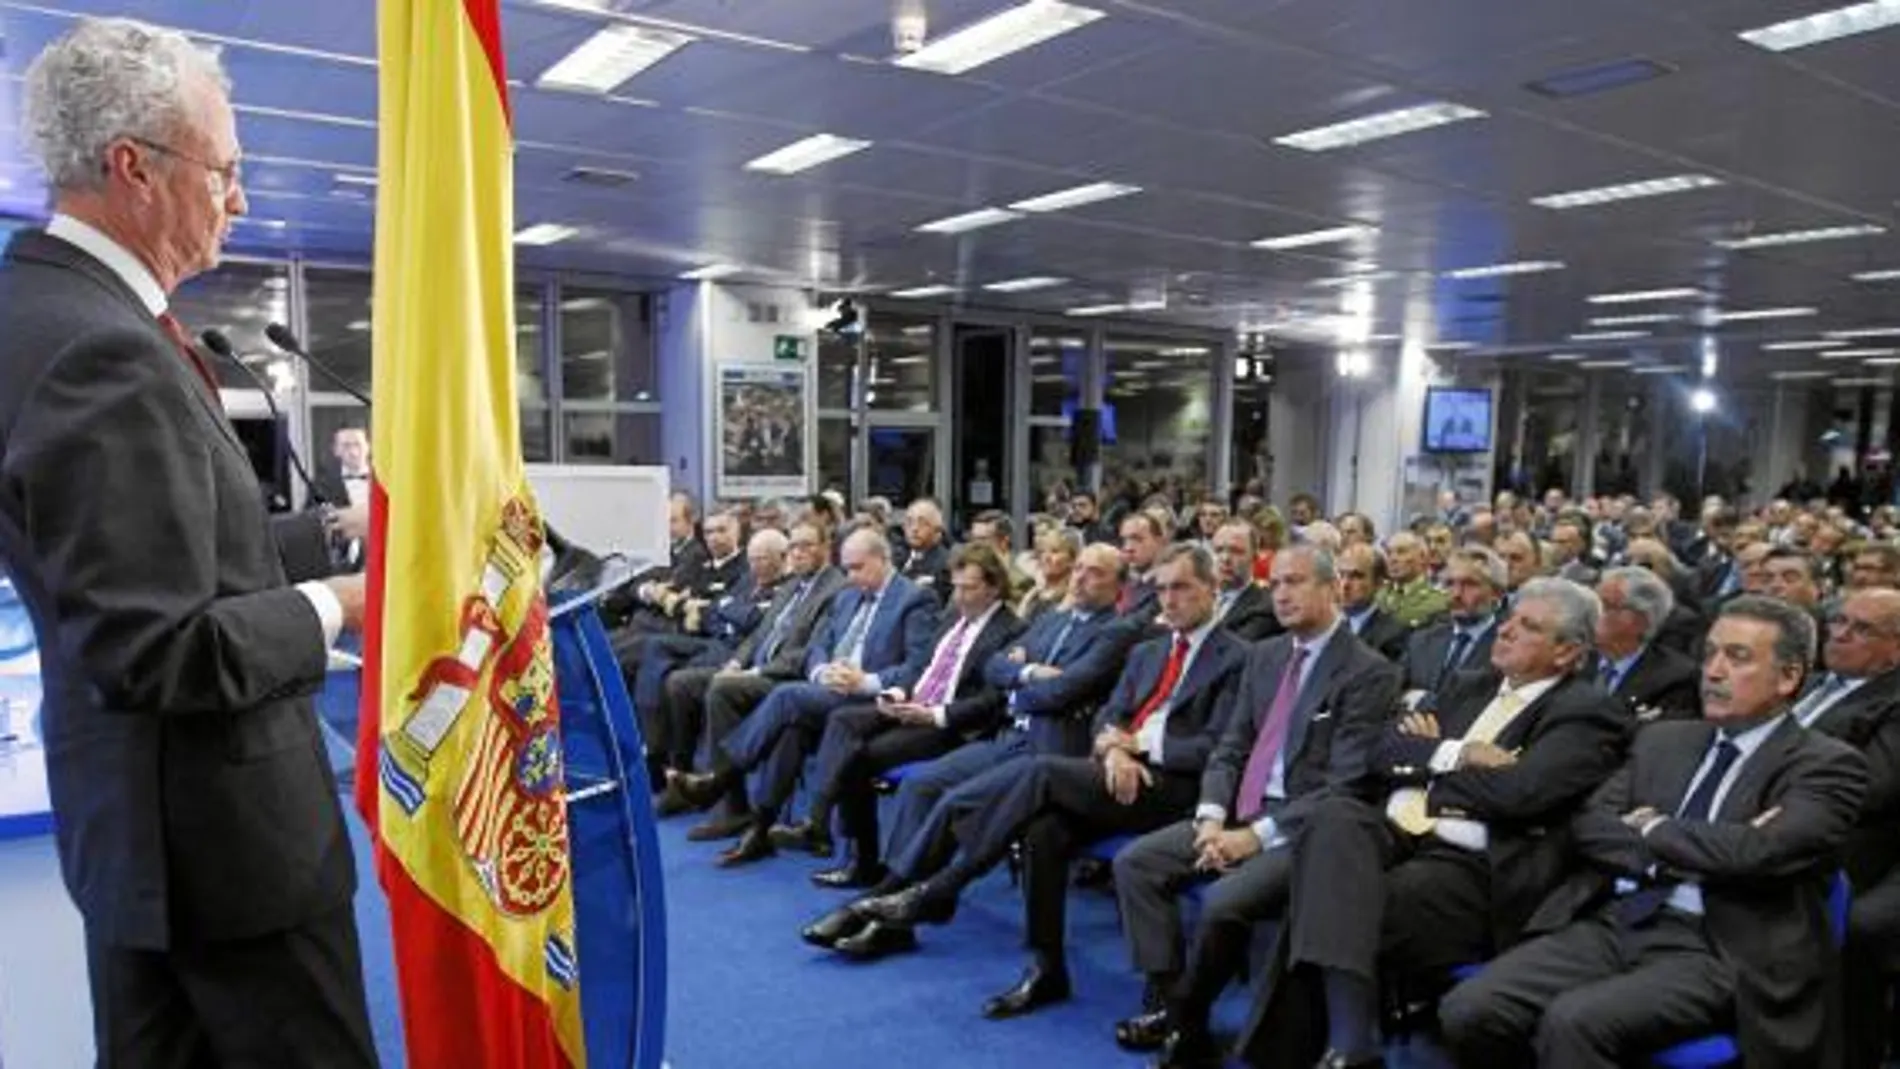 Pedro Morenésrespondió a las preguntas de Gloria Lomana, Javier González Ferrari y Francisco Marhuenda, en presencia de Alfonso Ussía